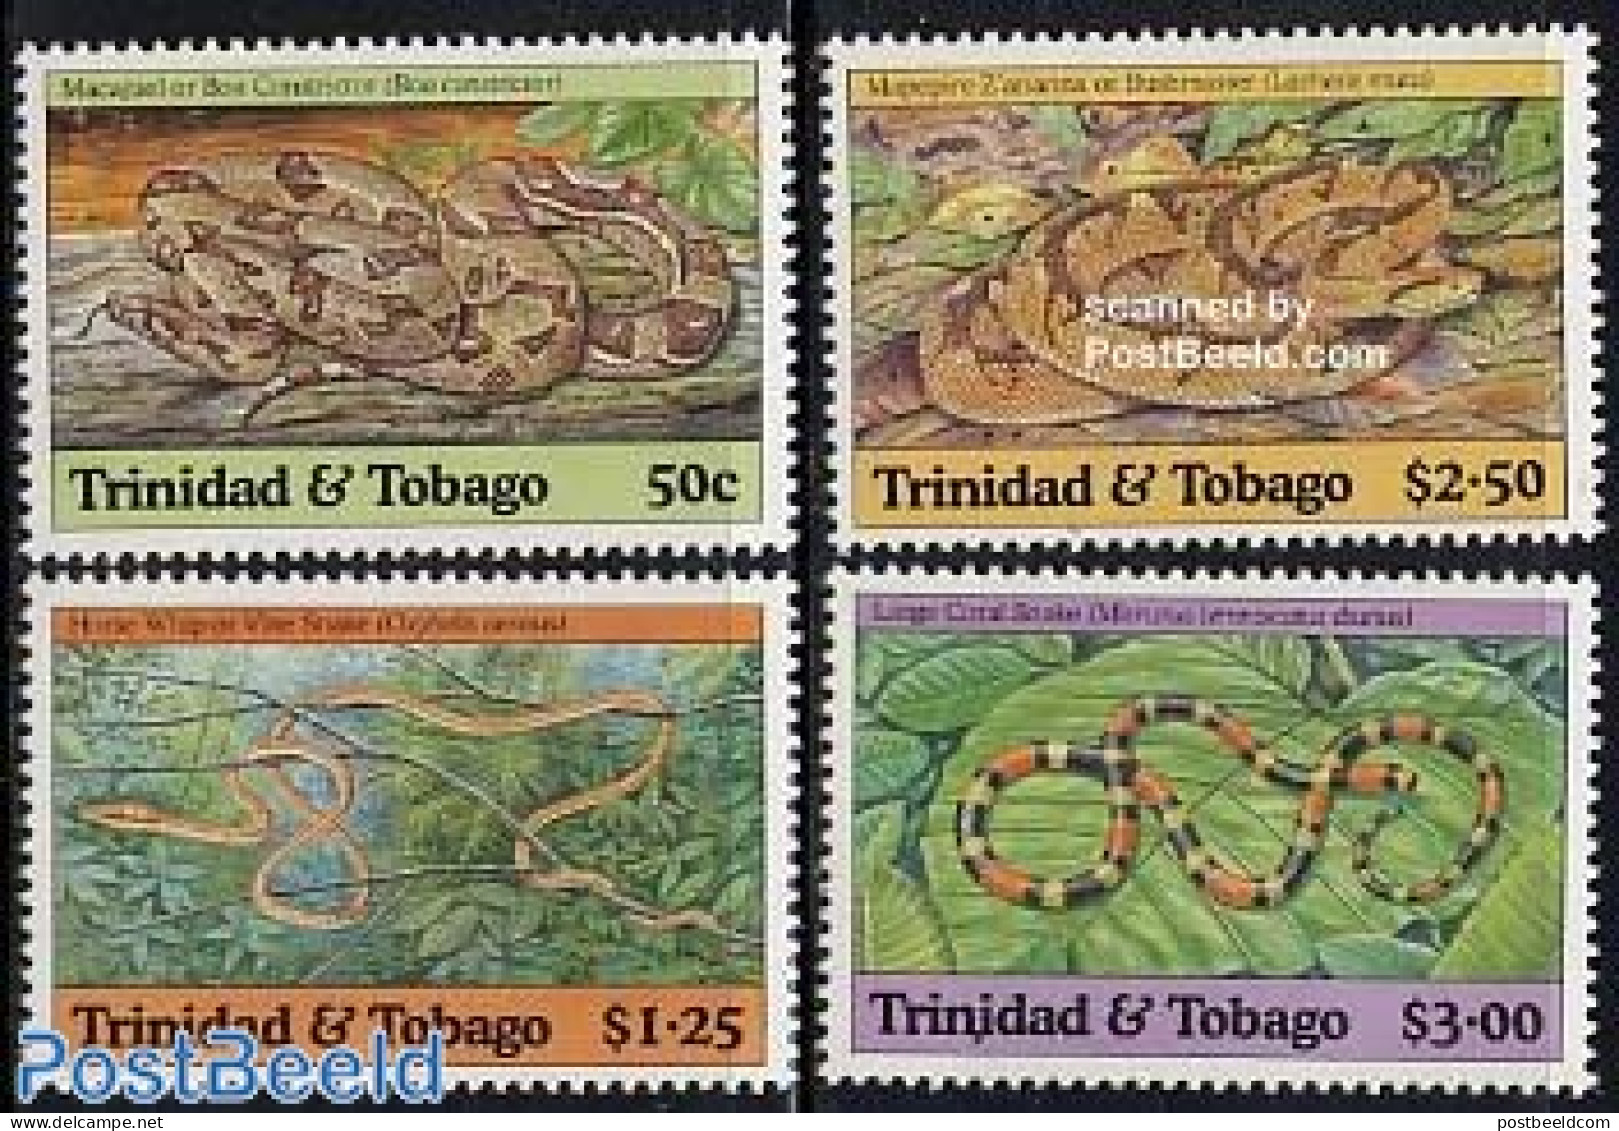 Trinidad & Tobago 1994 Snakes 4v, Mint NH, Nature - Reptiles - Snakes - Trinidad & Tobago (1962-...)